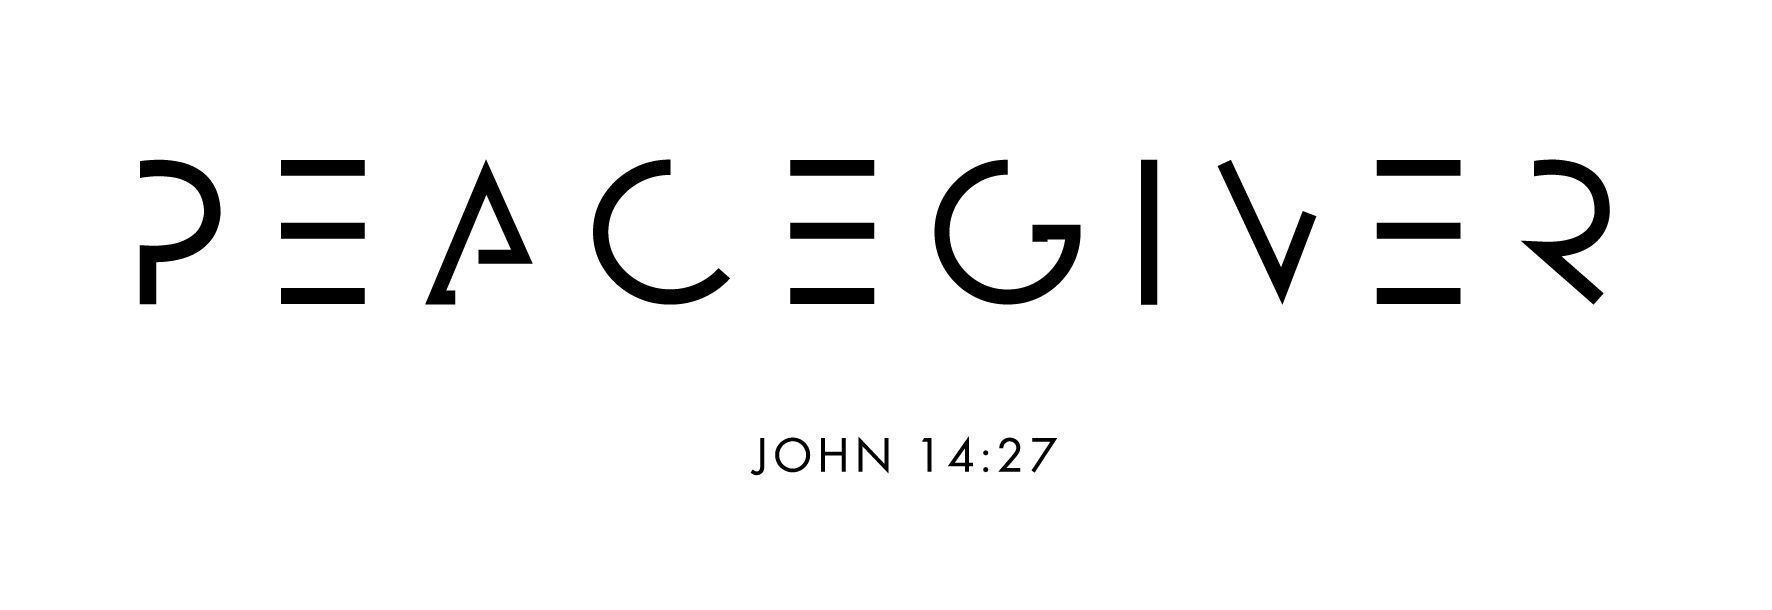 PEACEGIVER | John 14:27